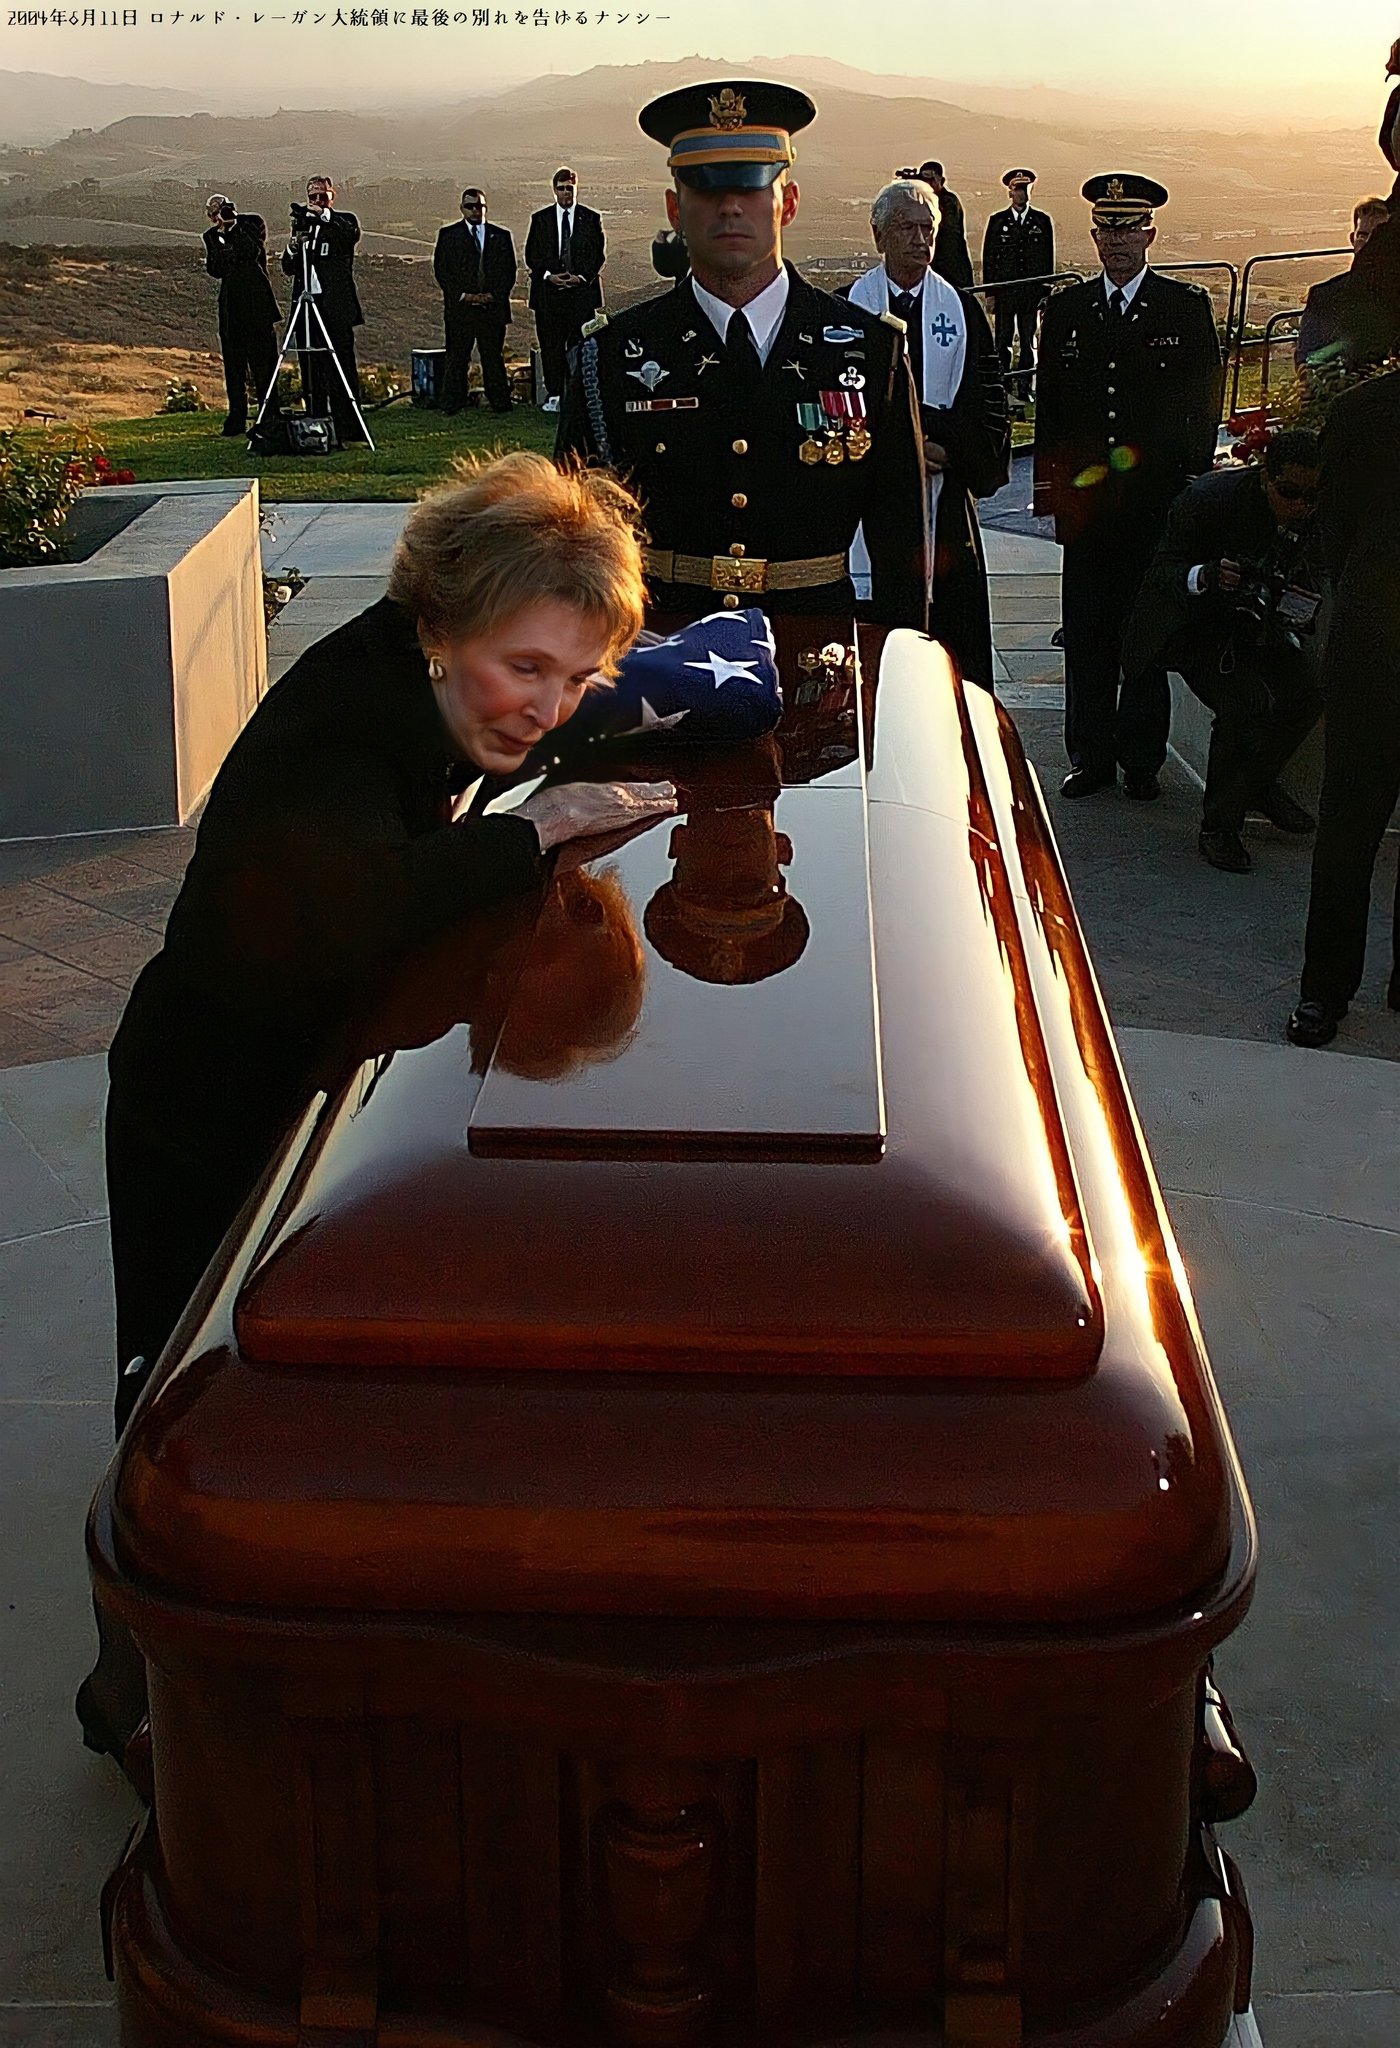 7日間国葬が続いた故・レーガン大統領